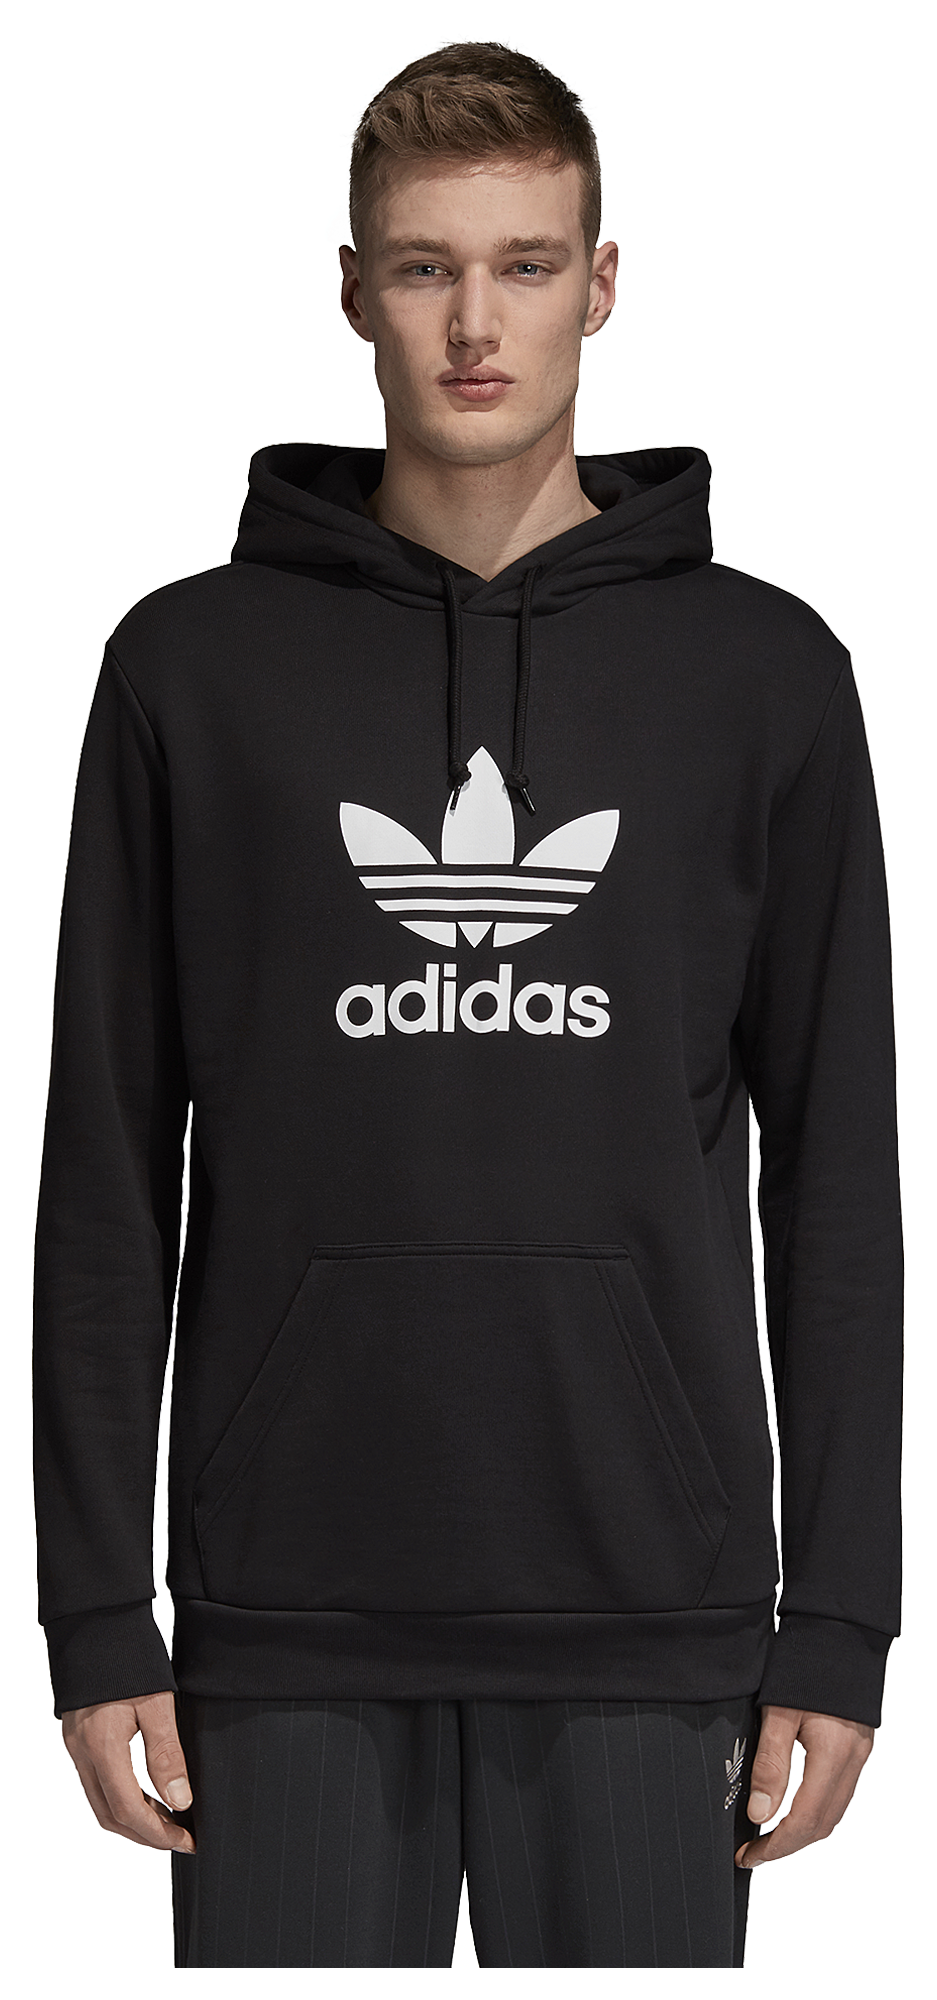 adidas zip up hoodie mens sale